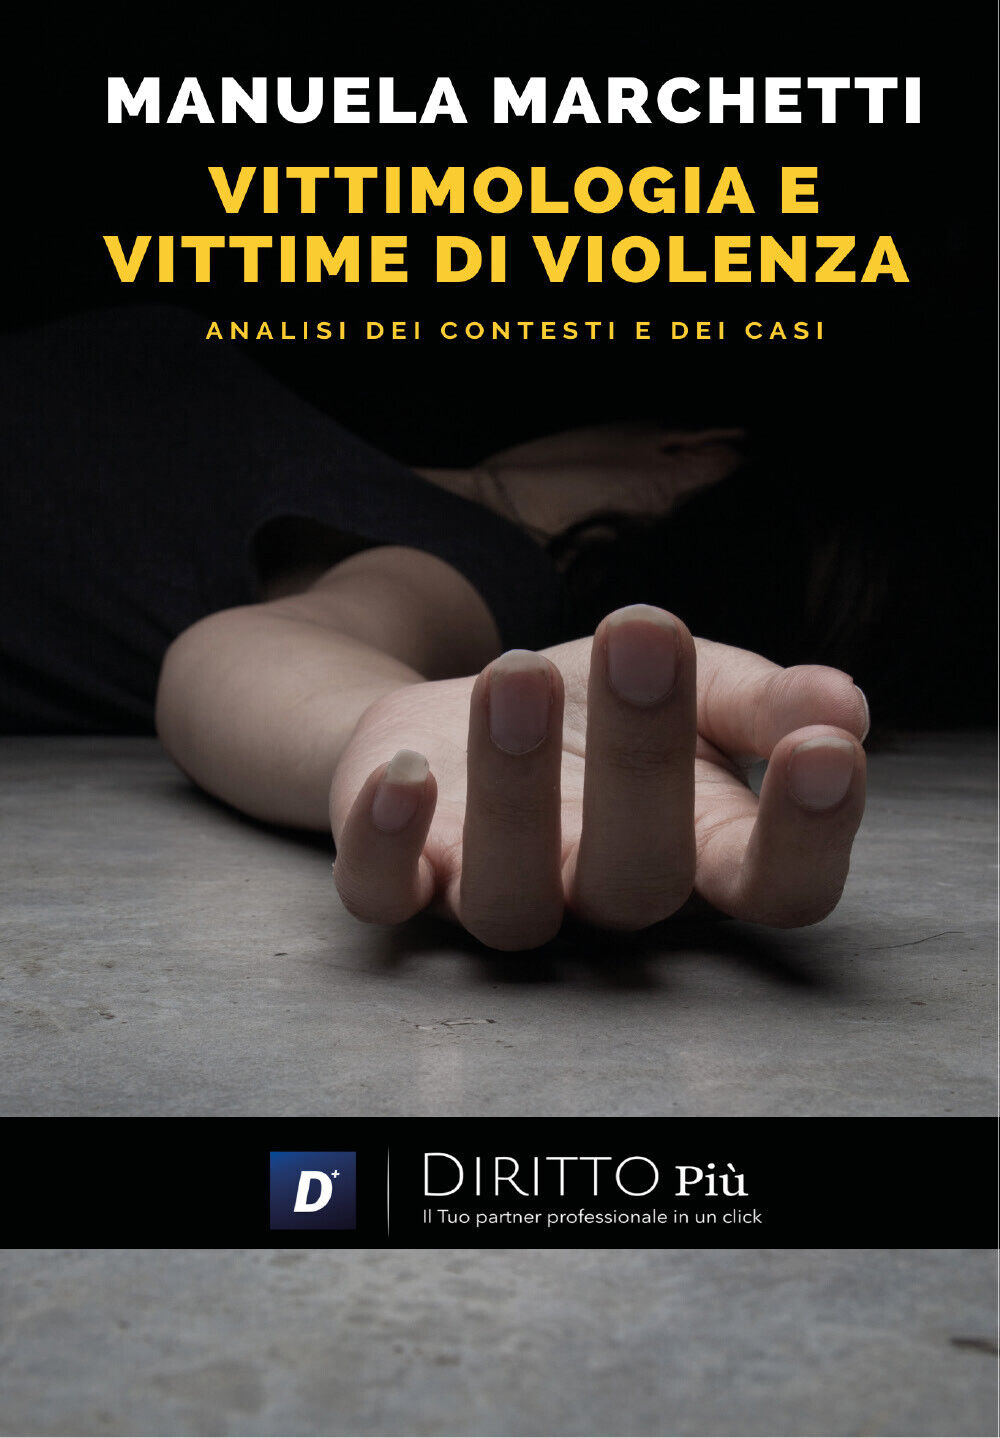 Vittimologia e Vittime di Violenza, analisi dei Contesti e dei casi di Manuela M libro usato